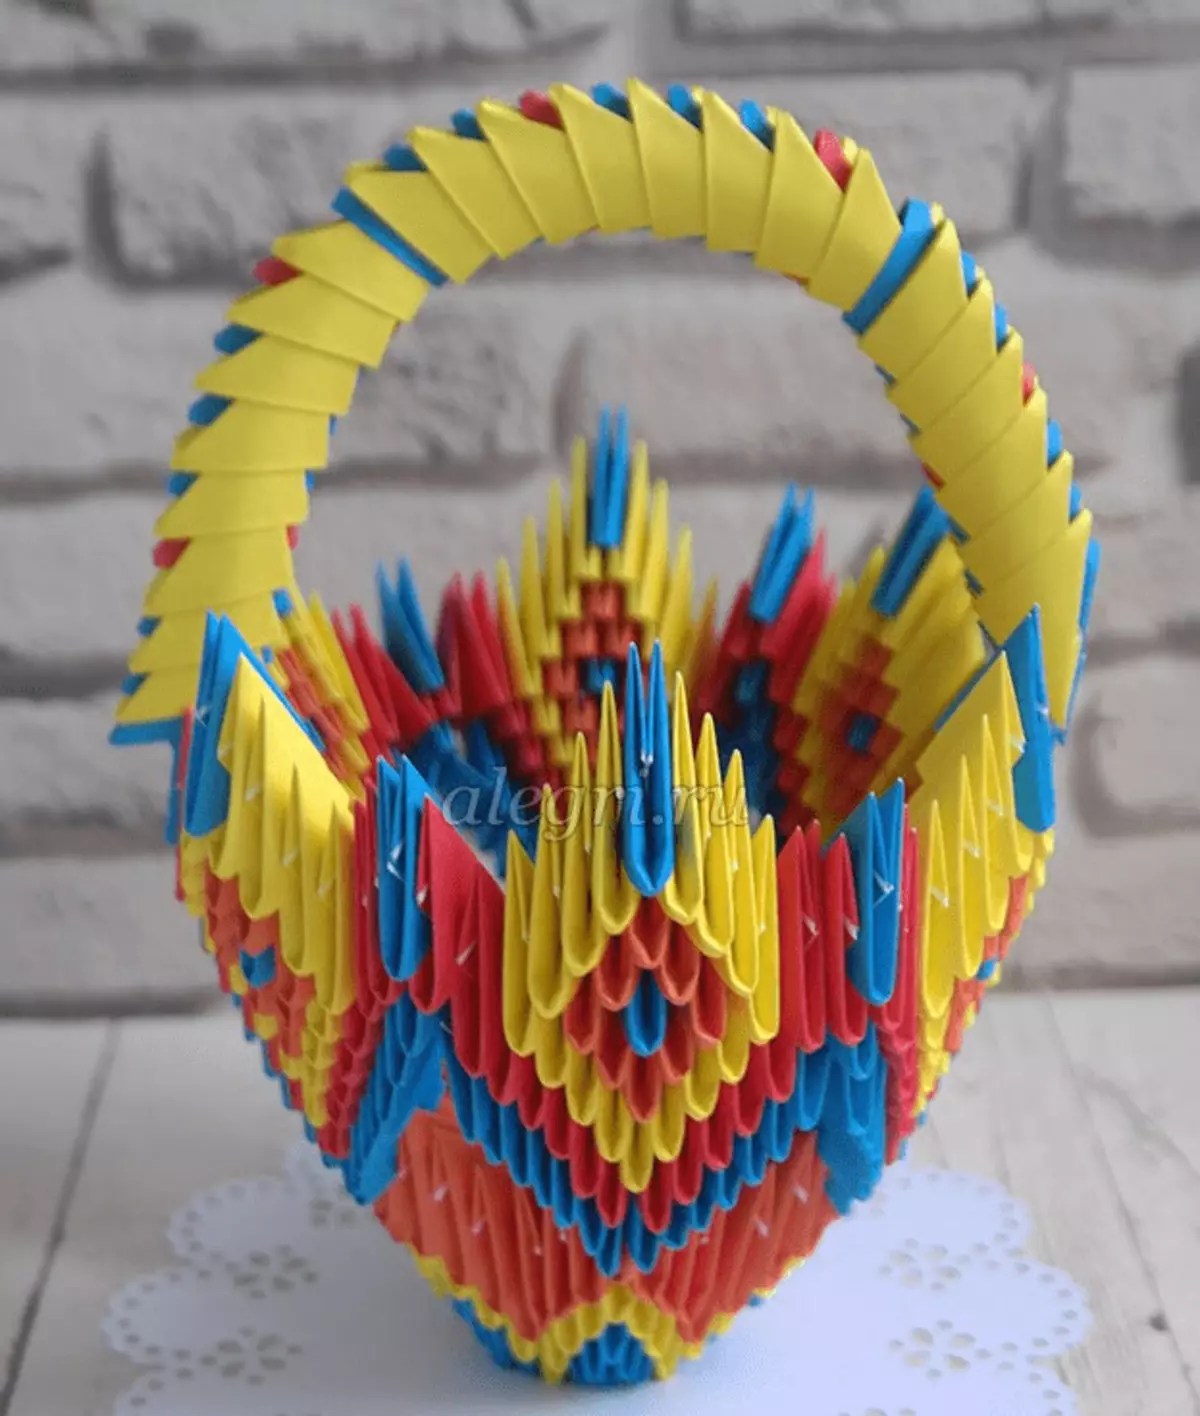 Origami-kwandon: daidaitaccen sassa Origami daga takarda da wani sauki kwandon da hannuwansu. Yadda za a yi a kwandon bisa ga makirci ga yara? 27010_18